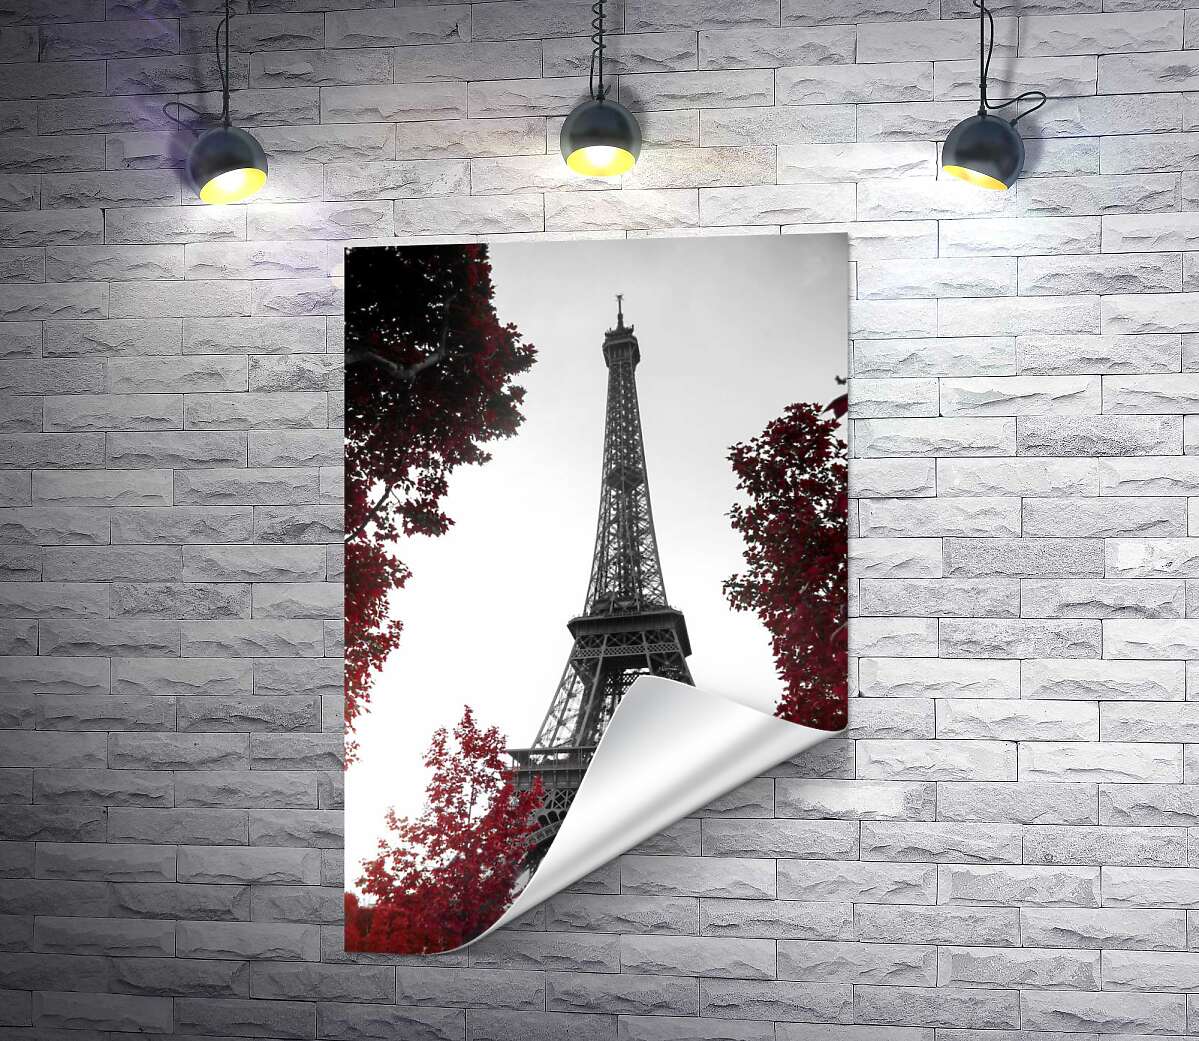 друк Полум'я осіннього листя навколо  Ейфелевої вежі (Eiffel tower)